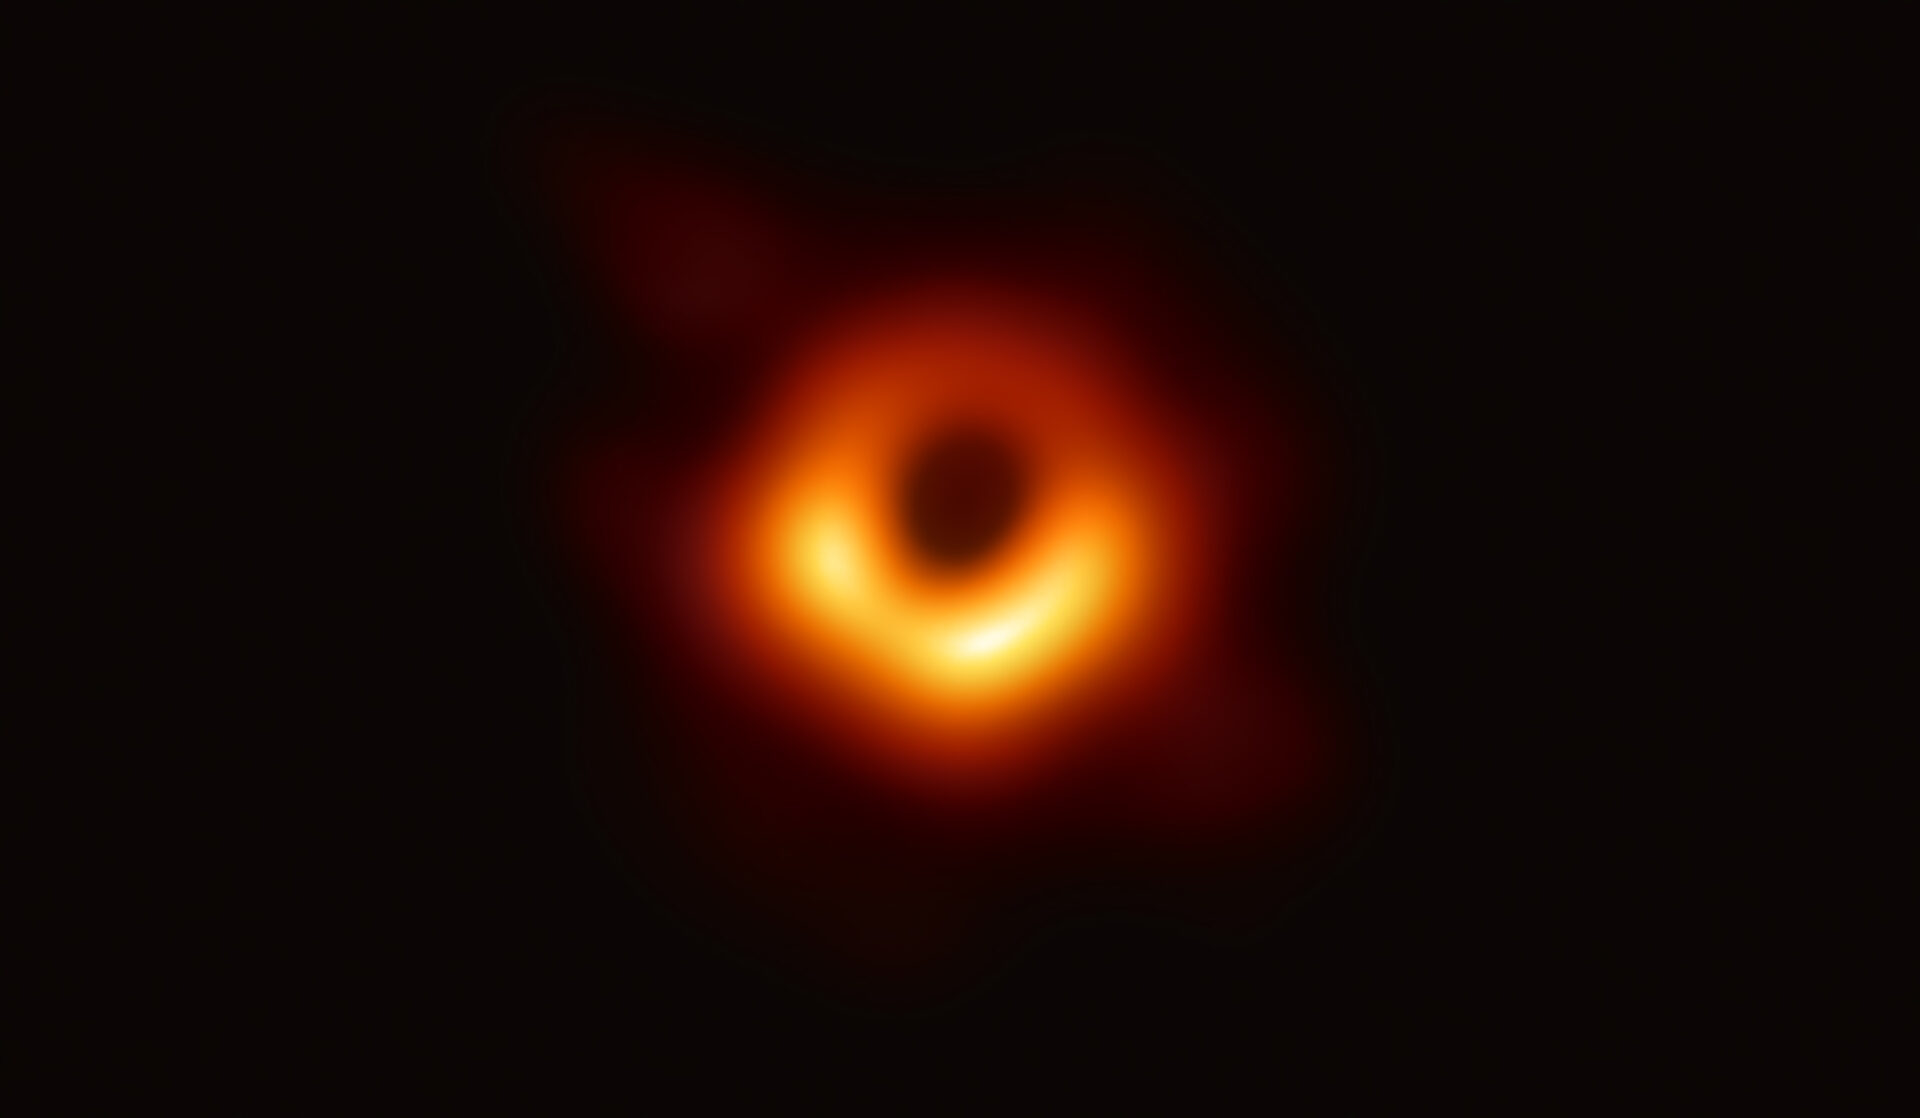 El Event Horizon Telescope (EHT), un conjunto a escala planetaria de ocho radiotelescopios terrestres forjados a través de la colaboración internacional, fue diseñado para capturar imágenes de un agujero negro. En conferencias de prensa coordinadas en todo el mundo, los investigadores de EHT revelaron que tuvieron éxito, revelando la primera evidencia visual directa del agujero negro supermasivo en el centro de Messier 87 y su sombra. La sombra de un agujero negro que se ve aquí es lo más cerca que podemos llegar a la imagen misma del agujero negro, un objeto completamente oscuro del cual la luz no puede escapar. El límite del agujero negro, el horizonte de eventos desde el cual el EHT toma su nombre, es aproximadamente 2,5 veces más pequeño que la sombra que proyecta y mide casi 40 mil millones de kilómetros de ancho. Si bien esto puede sonar grande, este anillo tiene solo unos 40 microarcsegundos, lo que equivale a medir la longitud de una tarjeta de crédito en la superficie de la Luna. Aunque los telescopios que forman el EHT no están conectados físicamente, son capaces de sincronizar los datos que registran con relojes atómicos, los máser de hidrógeno, que sincronizan sus observaciones de forma precisa. Estas observaciones se recopilaron en longitudes de onda de 1,3 mm durante una campaña global de 2017. Cada telescopio del EHT produjo enormes cantidades de datos, aproximadamente 350 terabytes por día, que se enviaron a supercomputadores altamente especializados, conocidos como correlacionadores, en el Instituto Max Planck de Radioastronomía y en el Observatorio Haystack MIT para su combinación. Luego se convirtieron meticulosamente en una imagen utilizando innovadoras herramientas computacionales desarrolladas por la colaboración. Crédito: Colaboración EHT